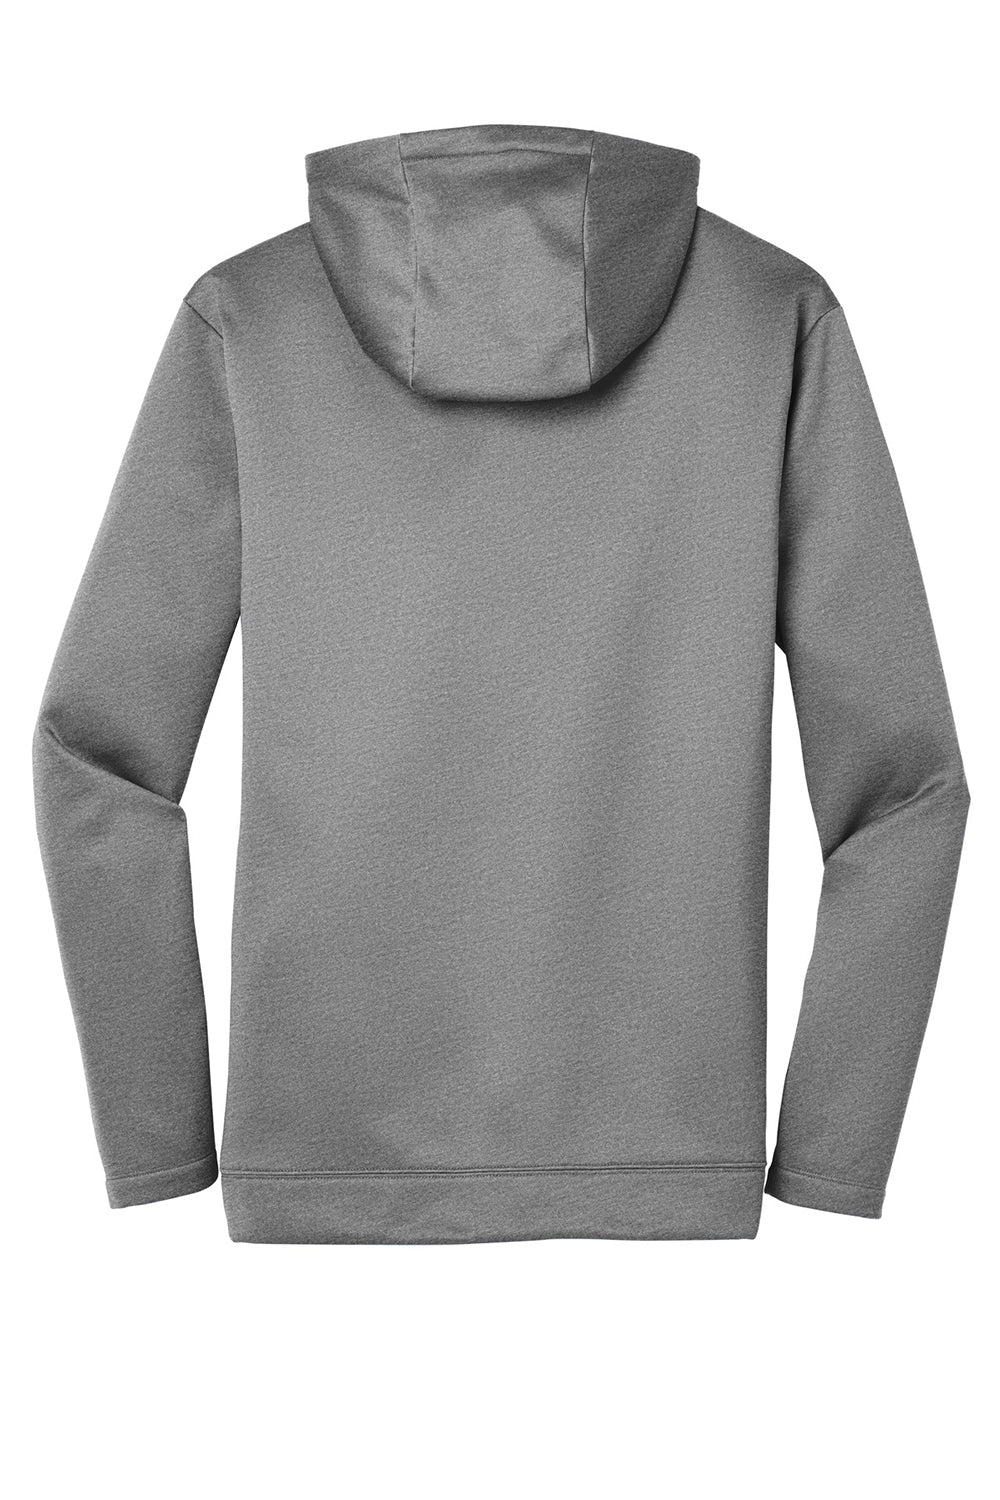 Nike NKAH6259 Mens Therma-Fit Moisture Wicking Fleece Full Zip Hooded Sweatshirt Hoodie Heather Dark Grey Flat Back